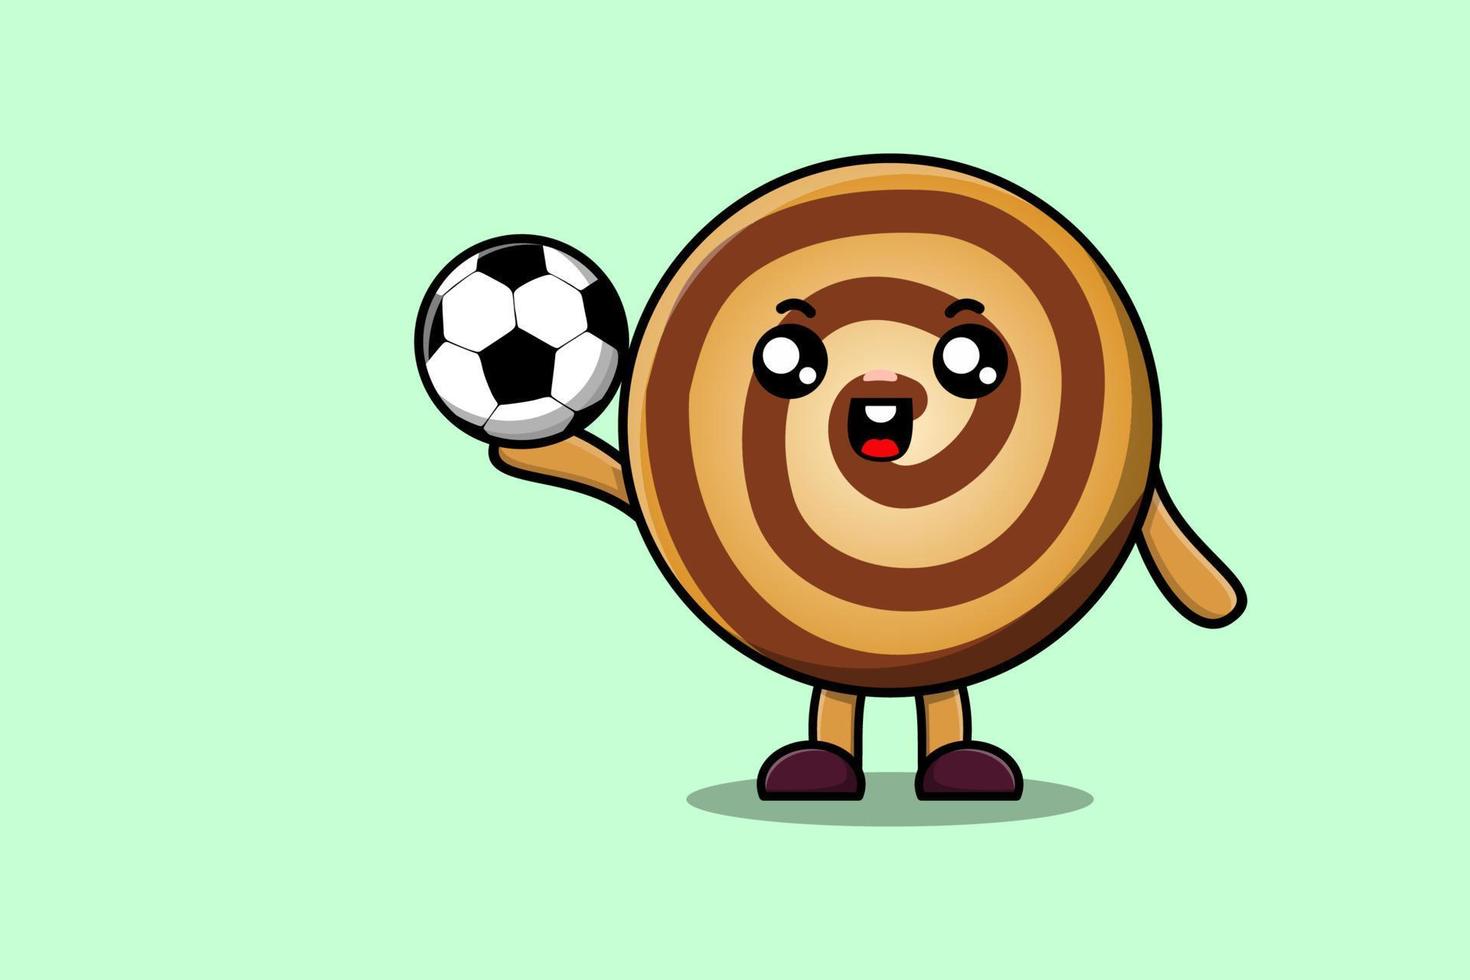 söt tecknad serie småkakor karaktär spelar fotboll vektor